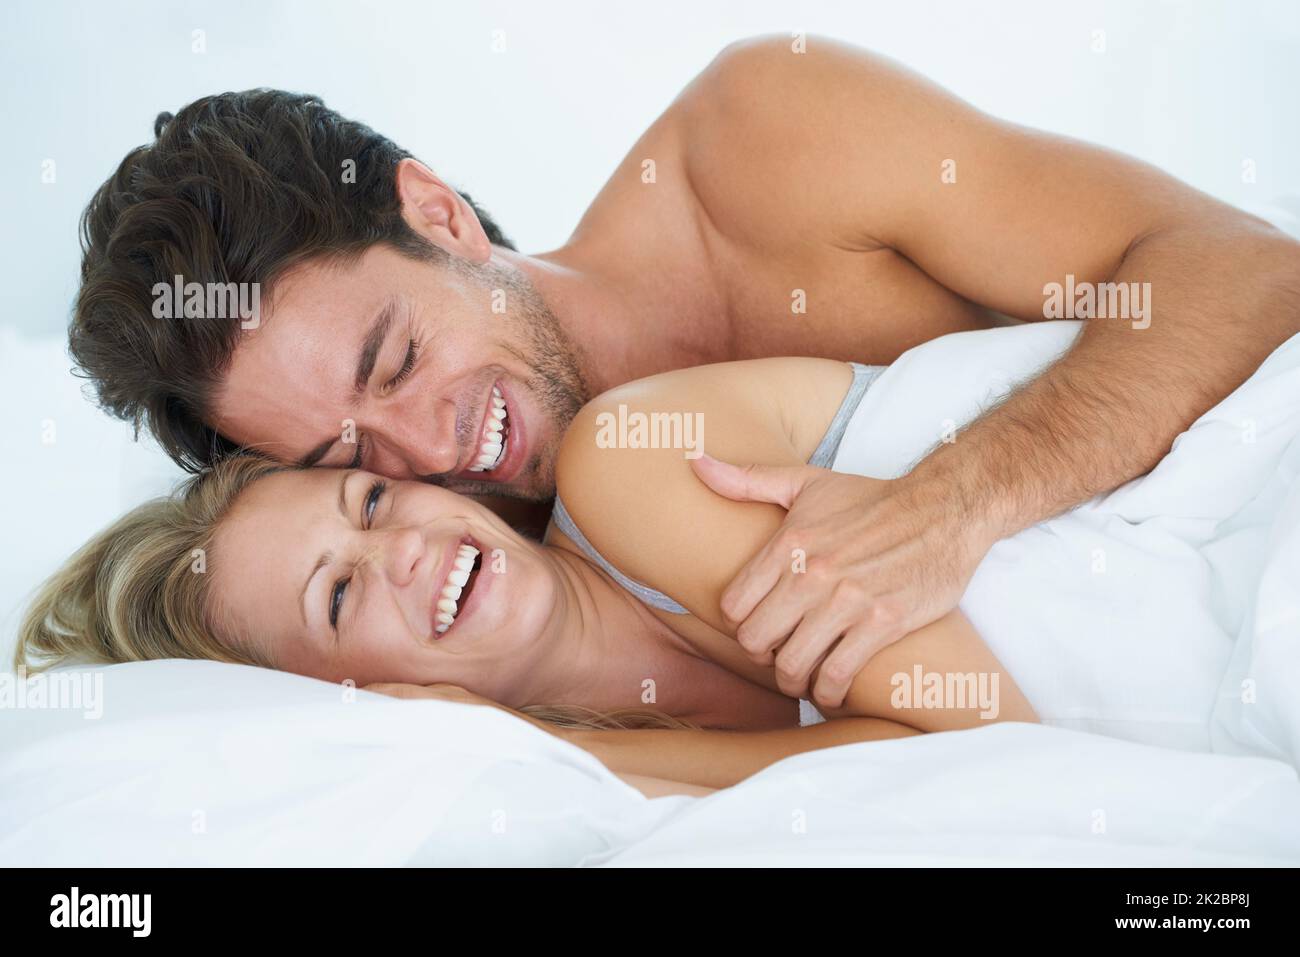 Magische Morgen zusammen. Ein Mann umarmt seine Frau liebevoll, während er zusammen im Bett liegt. Stockfoto